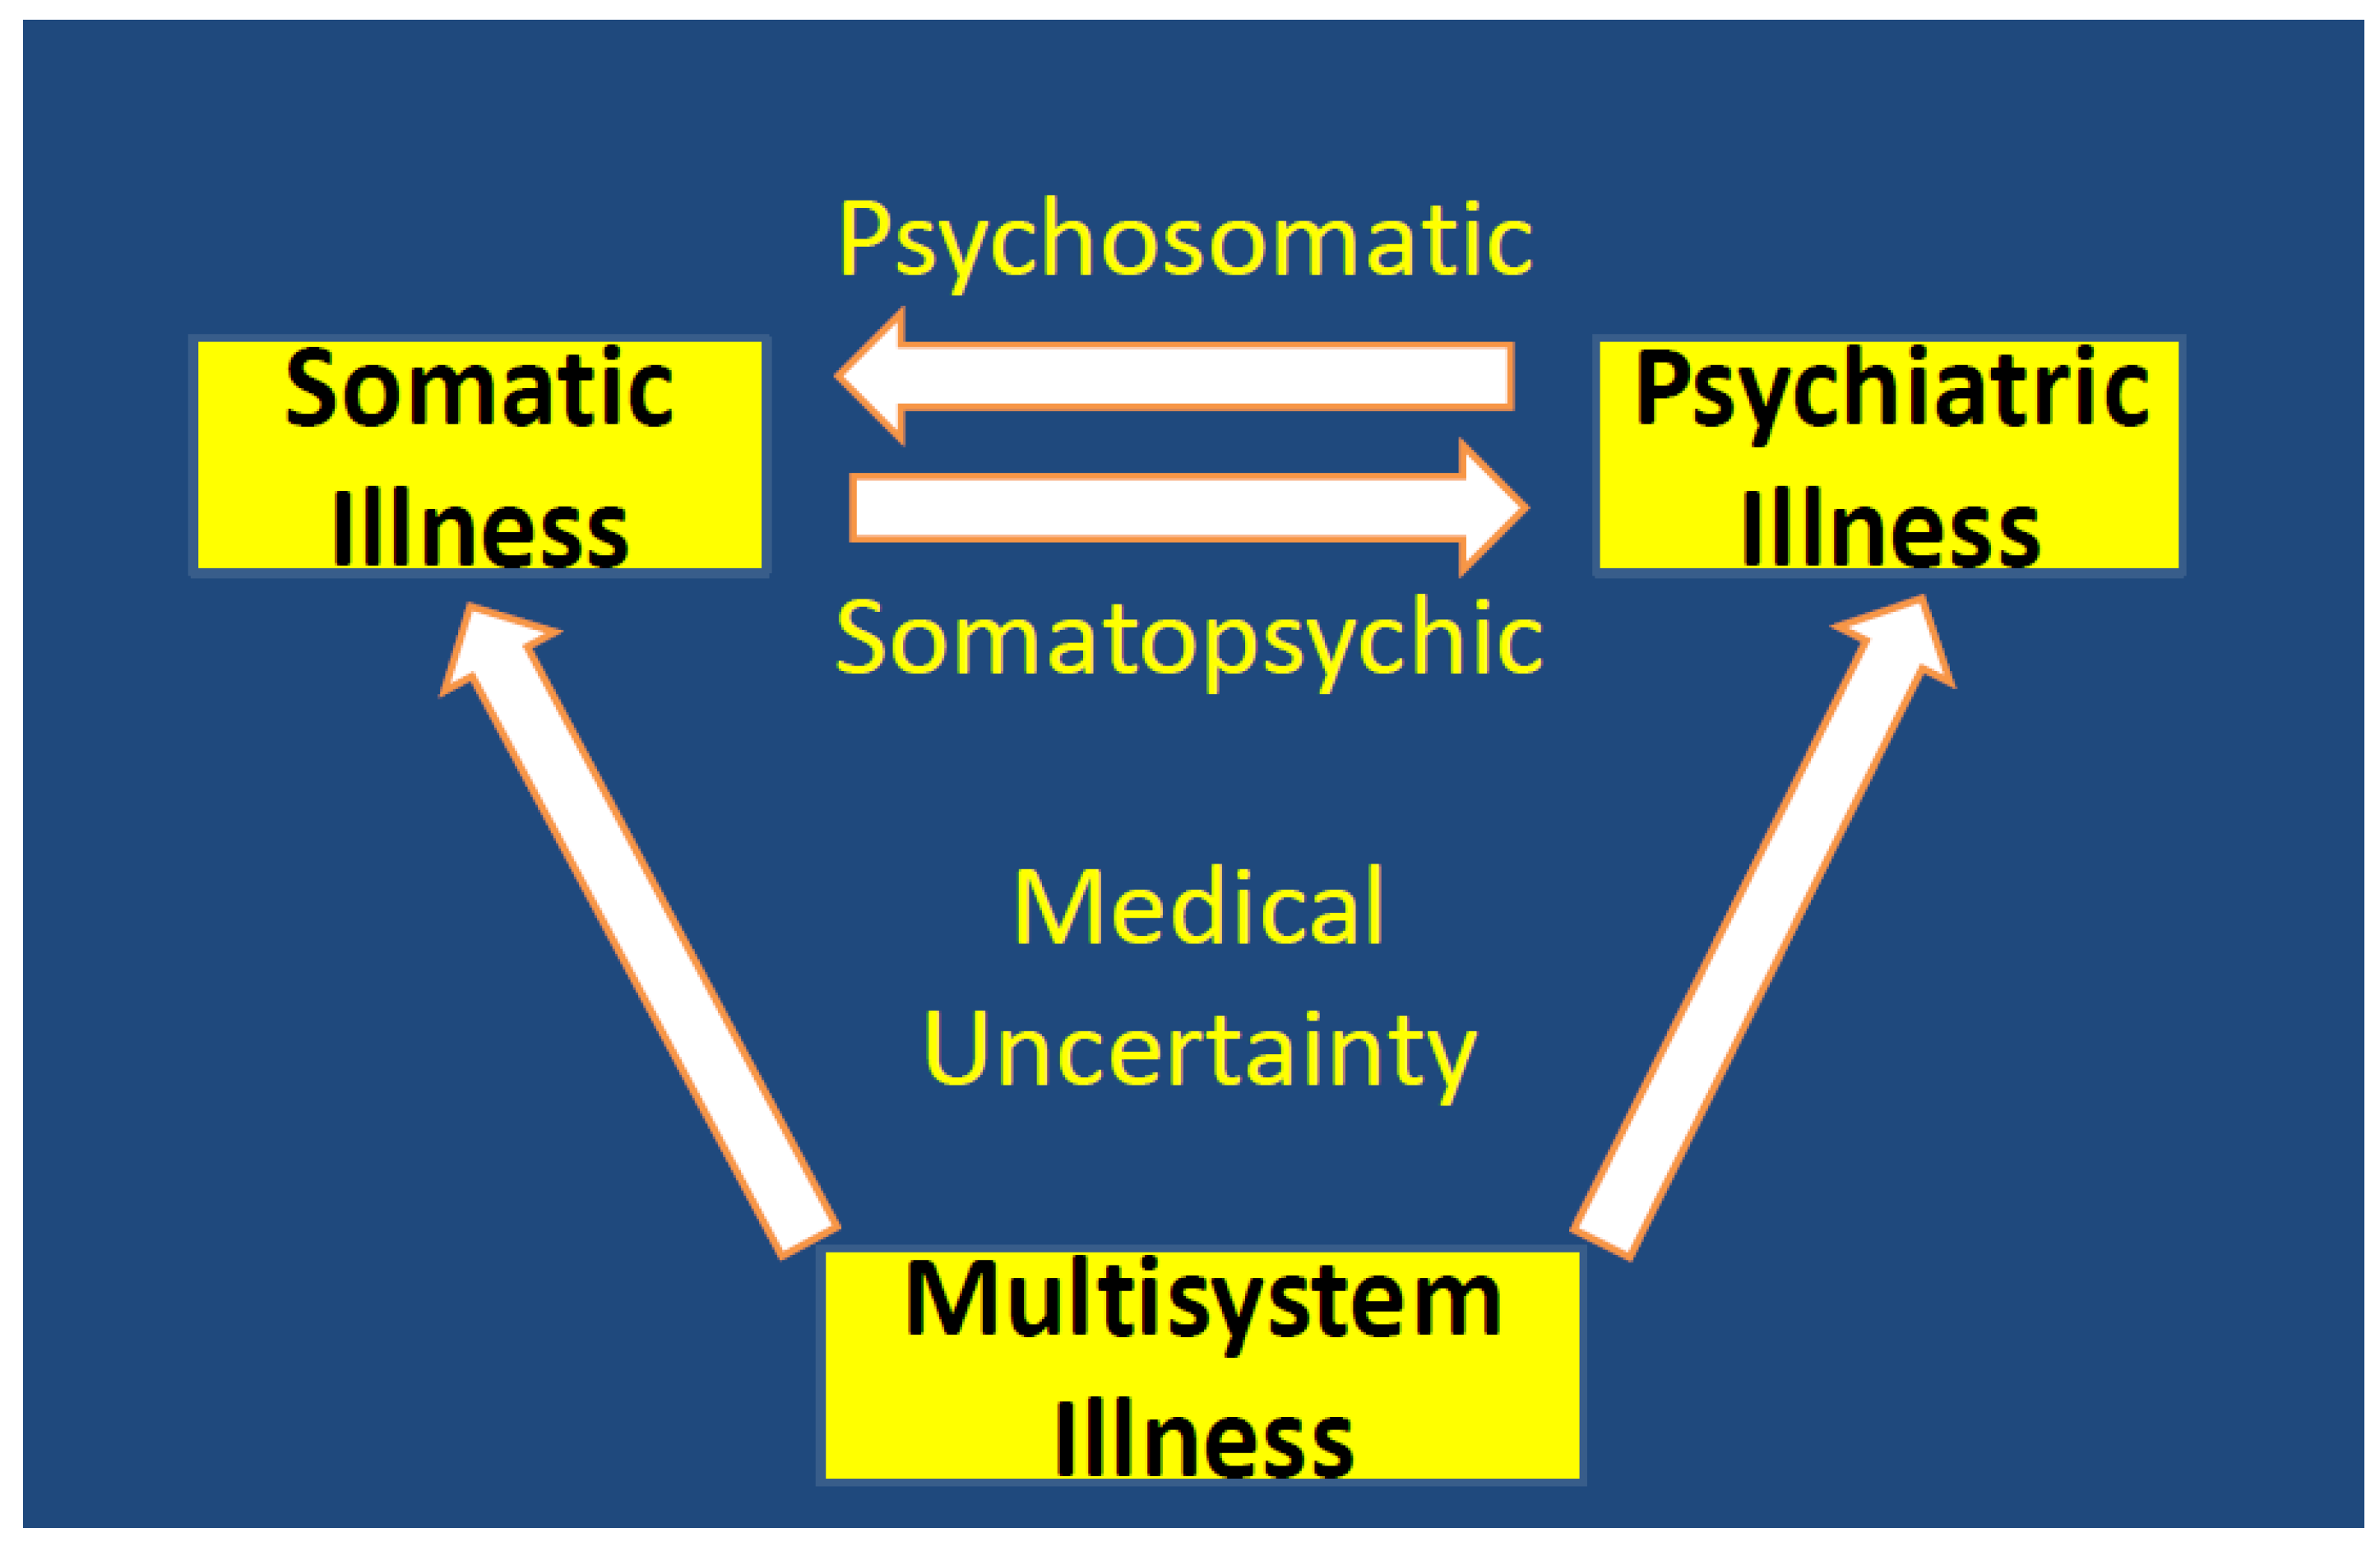 Psychosomatic Chart